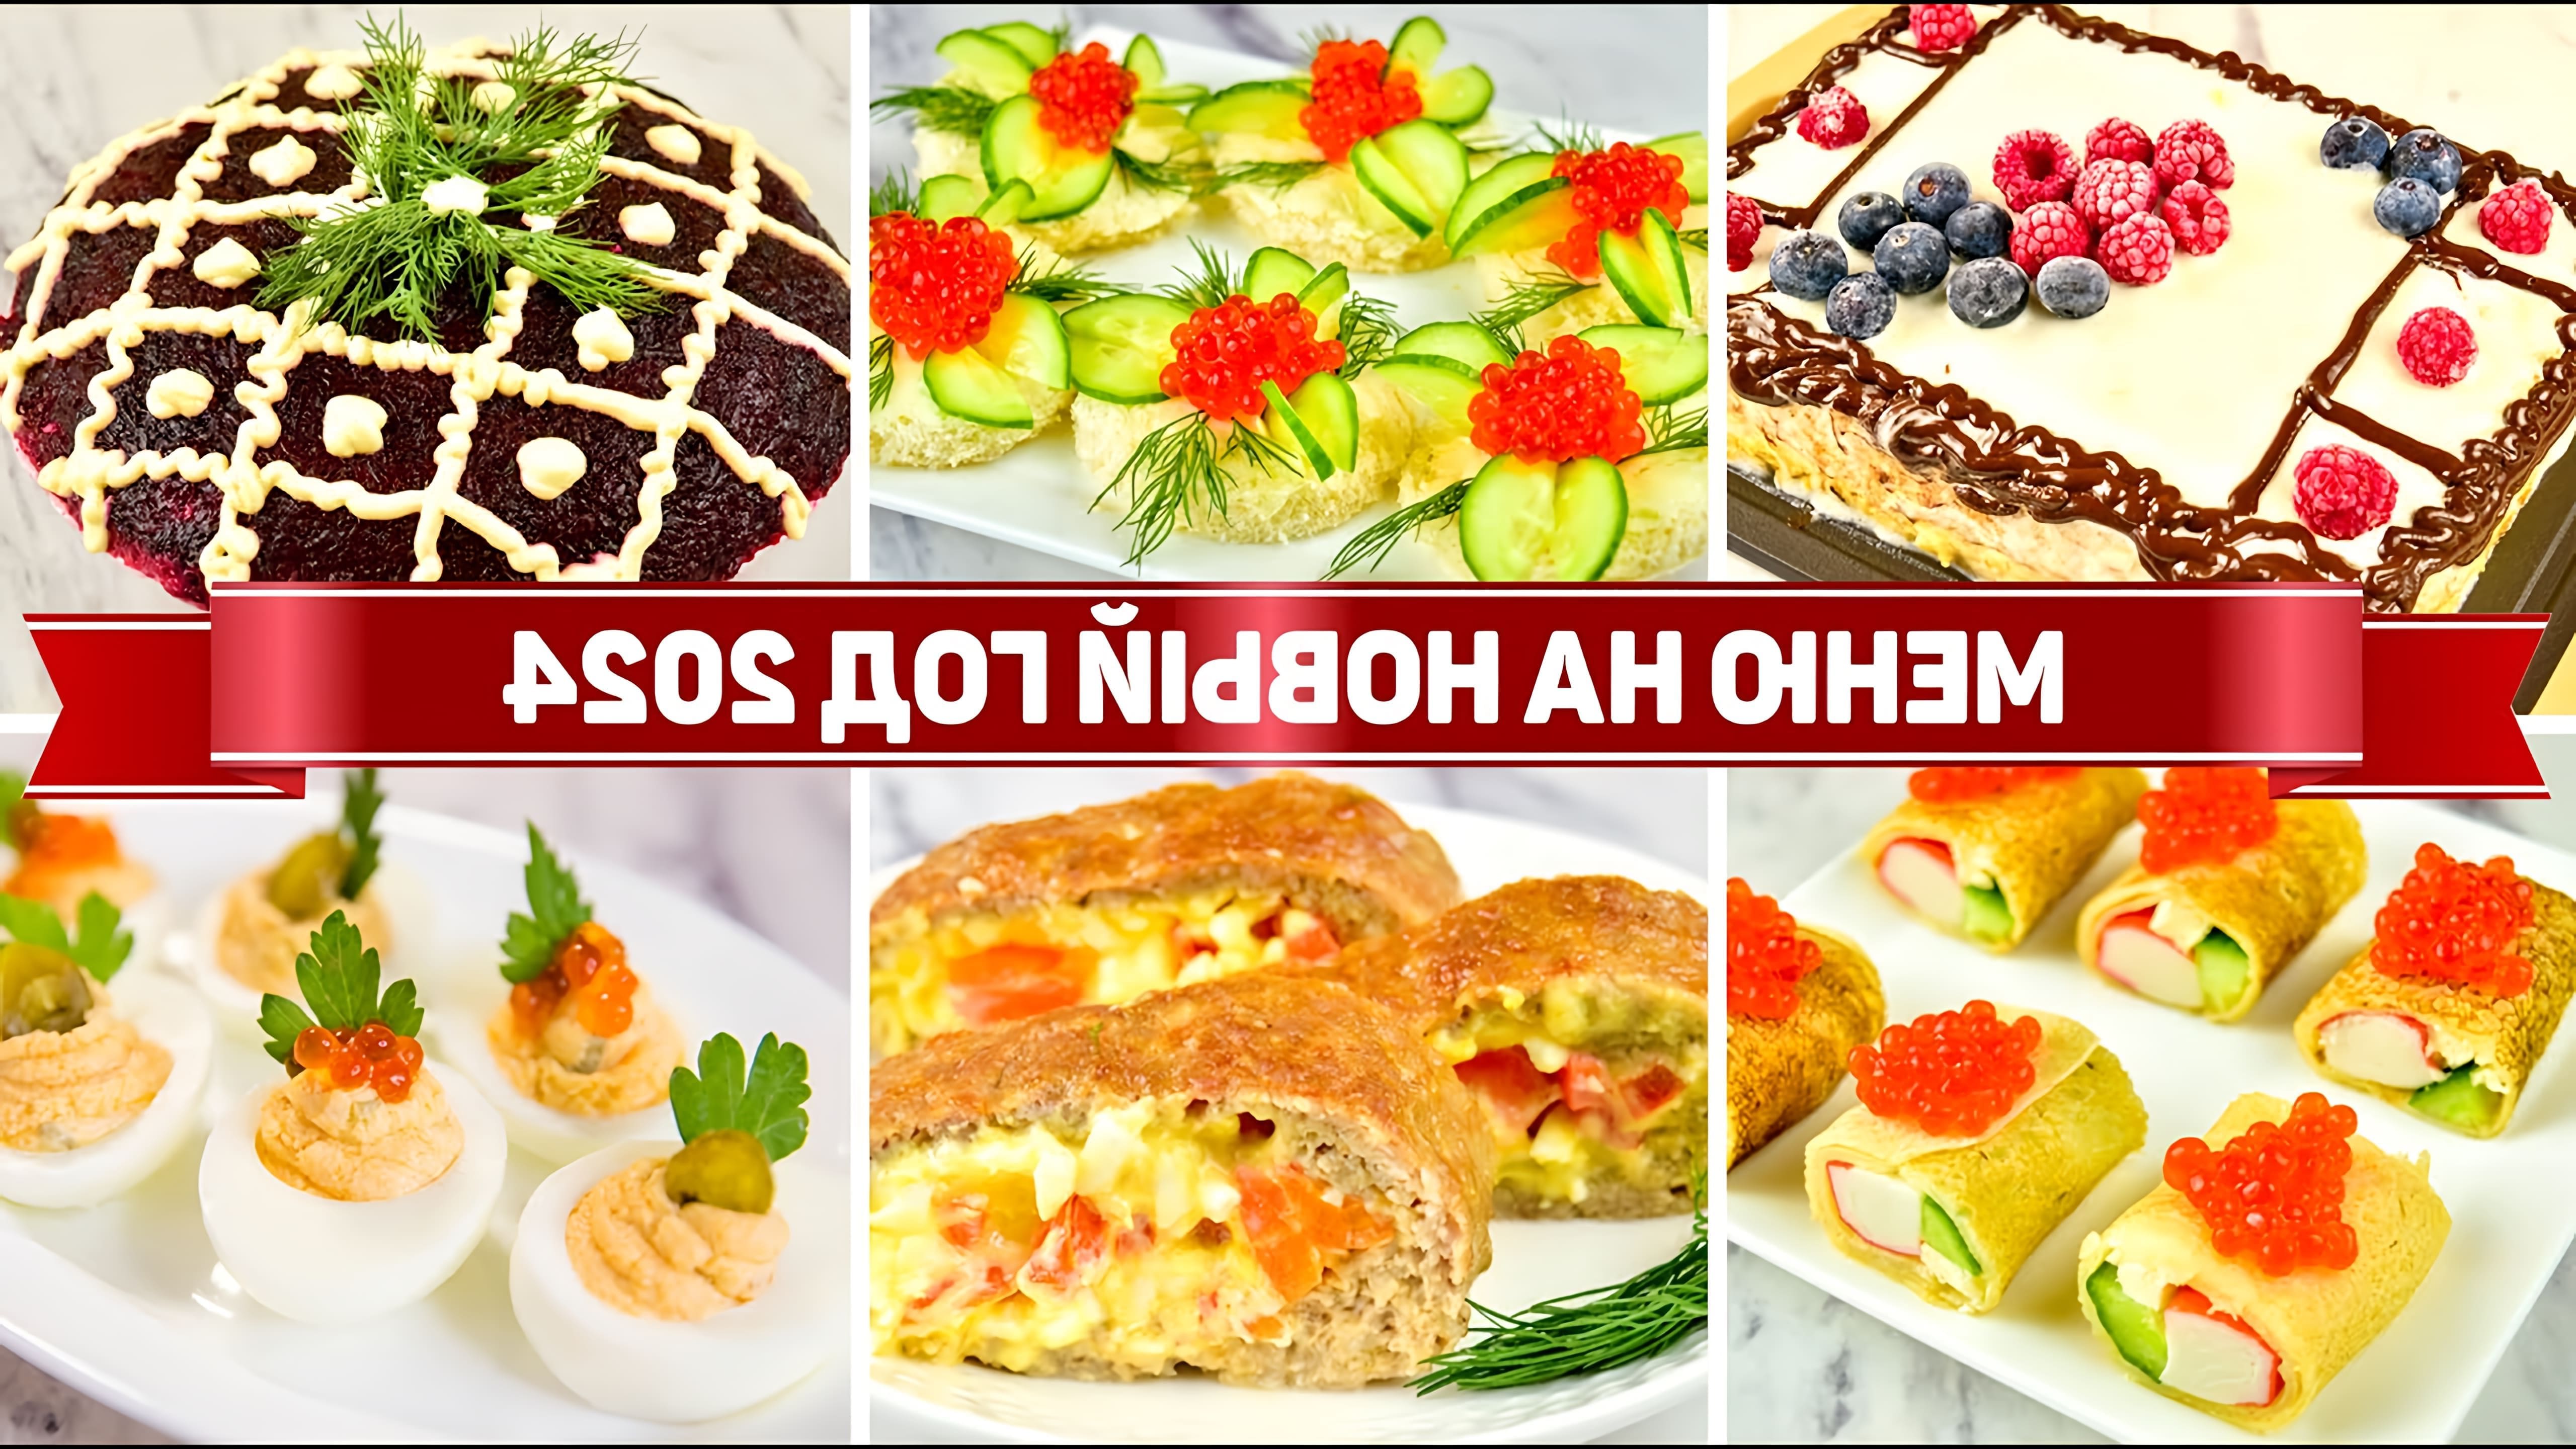 В этом видео Вика Виноградова предлагает бюджетное новогоднее меню, включающее закуски, салаты, горячее и торт